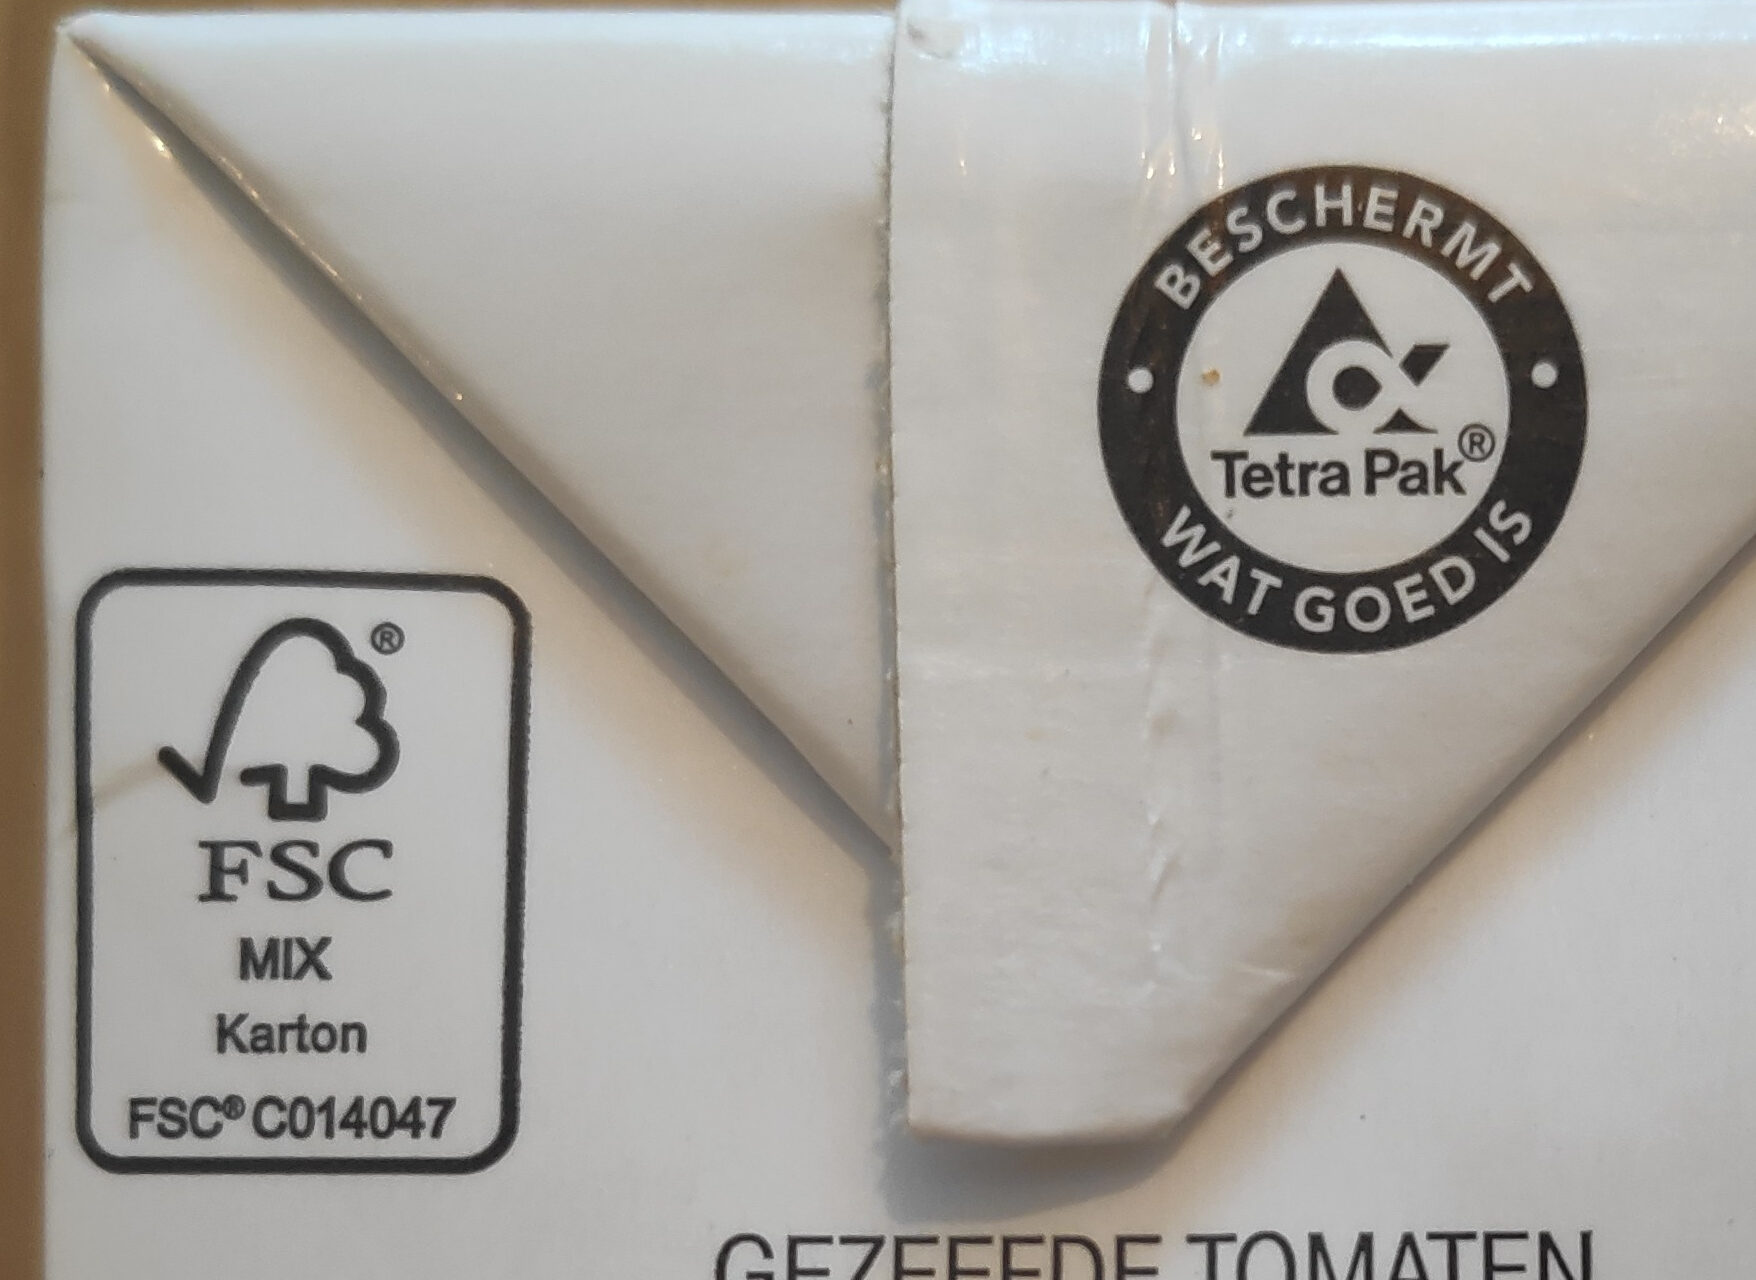 Passata tomaten gezeefd - Recyclinginstructies en / of verpakkingsinformatie